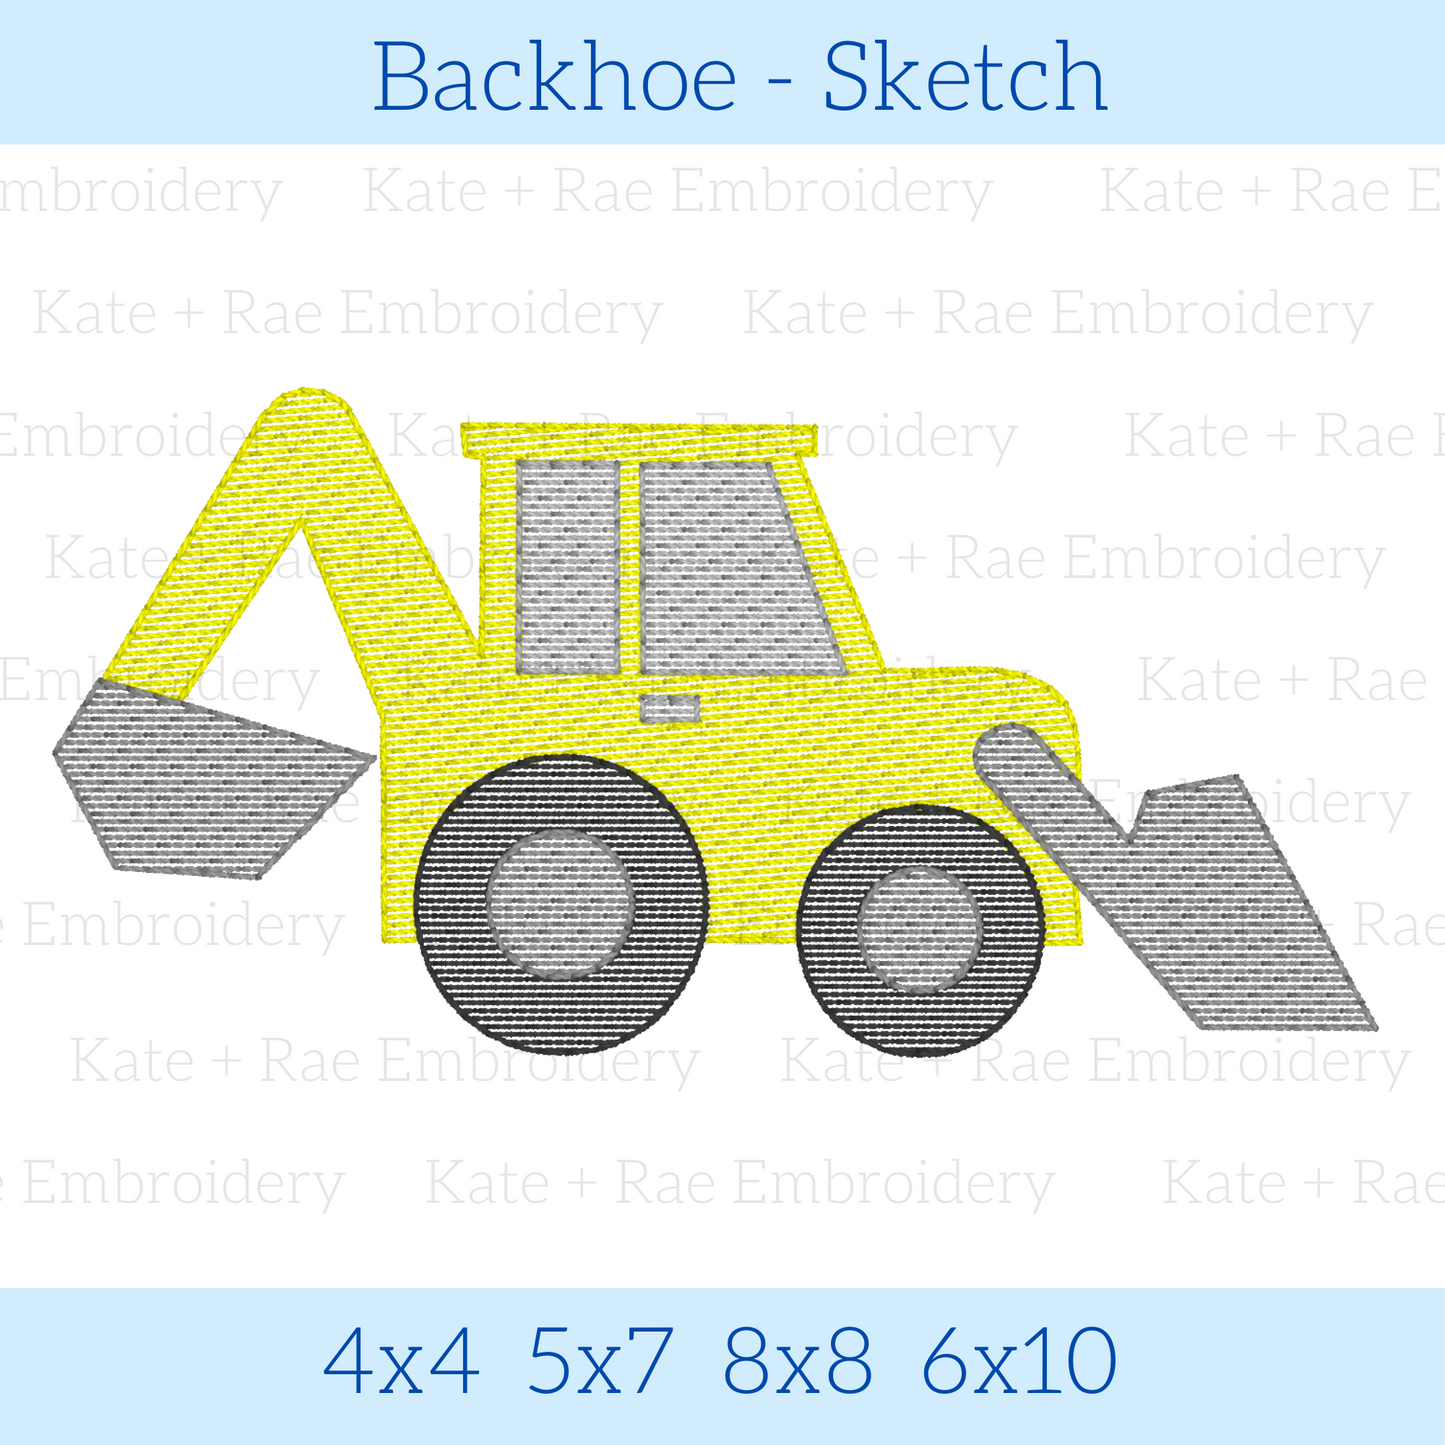 Backhoe Sketch Embroidery Design